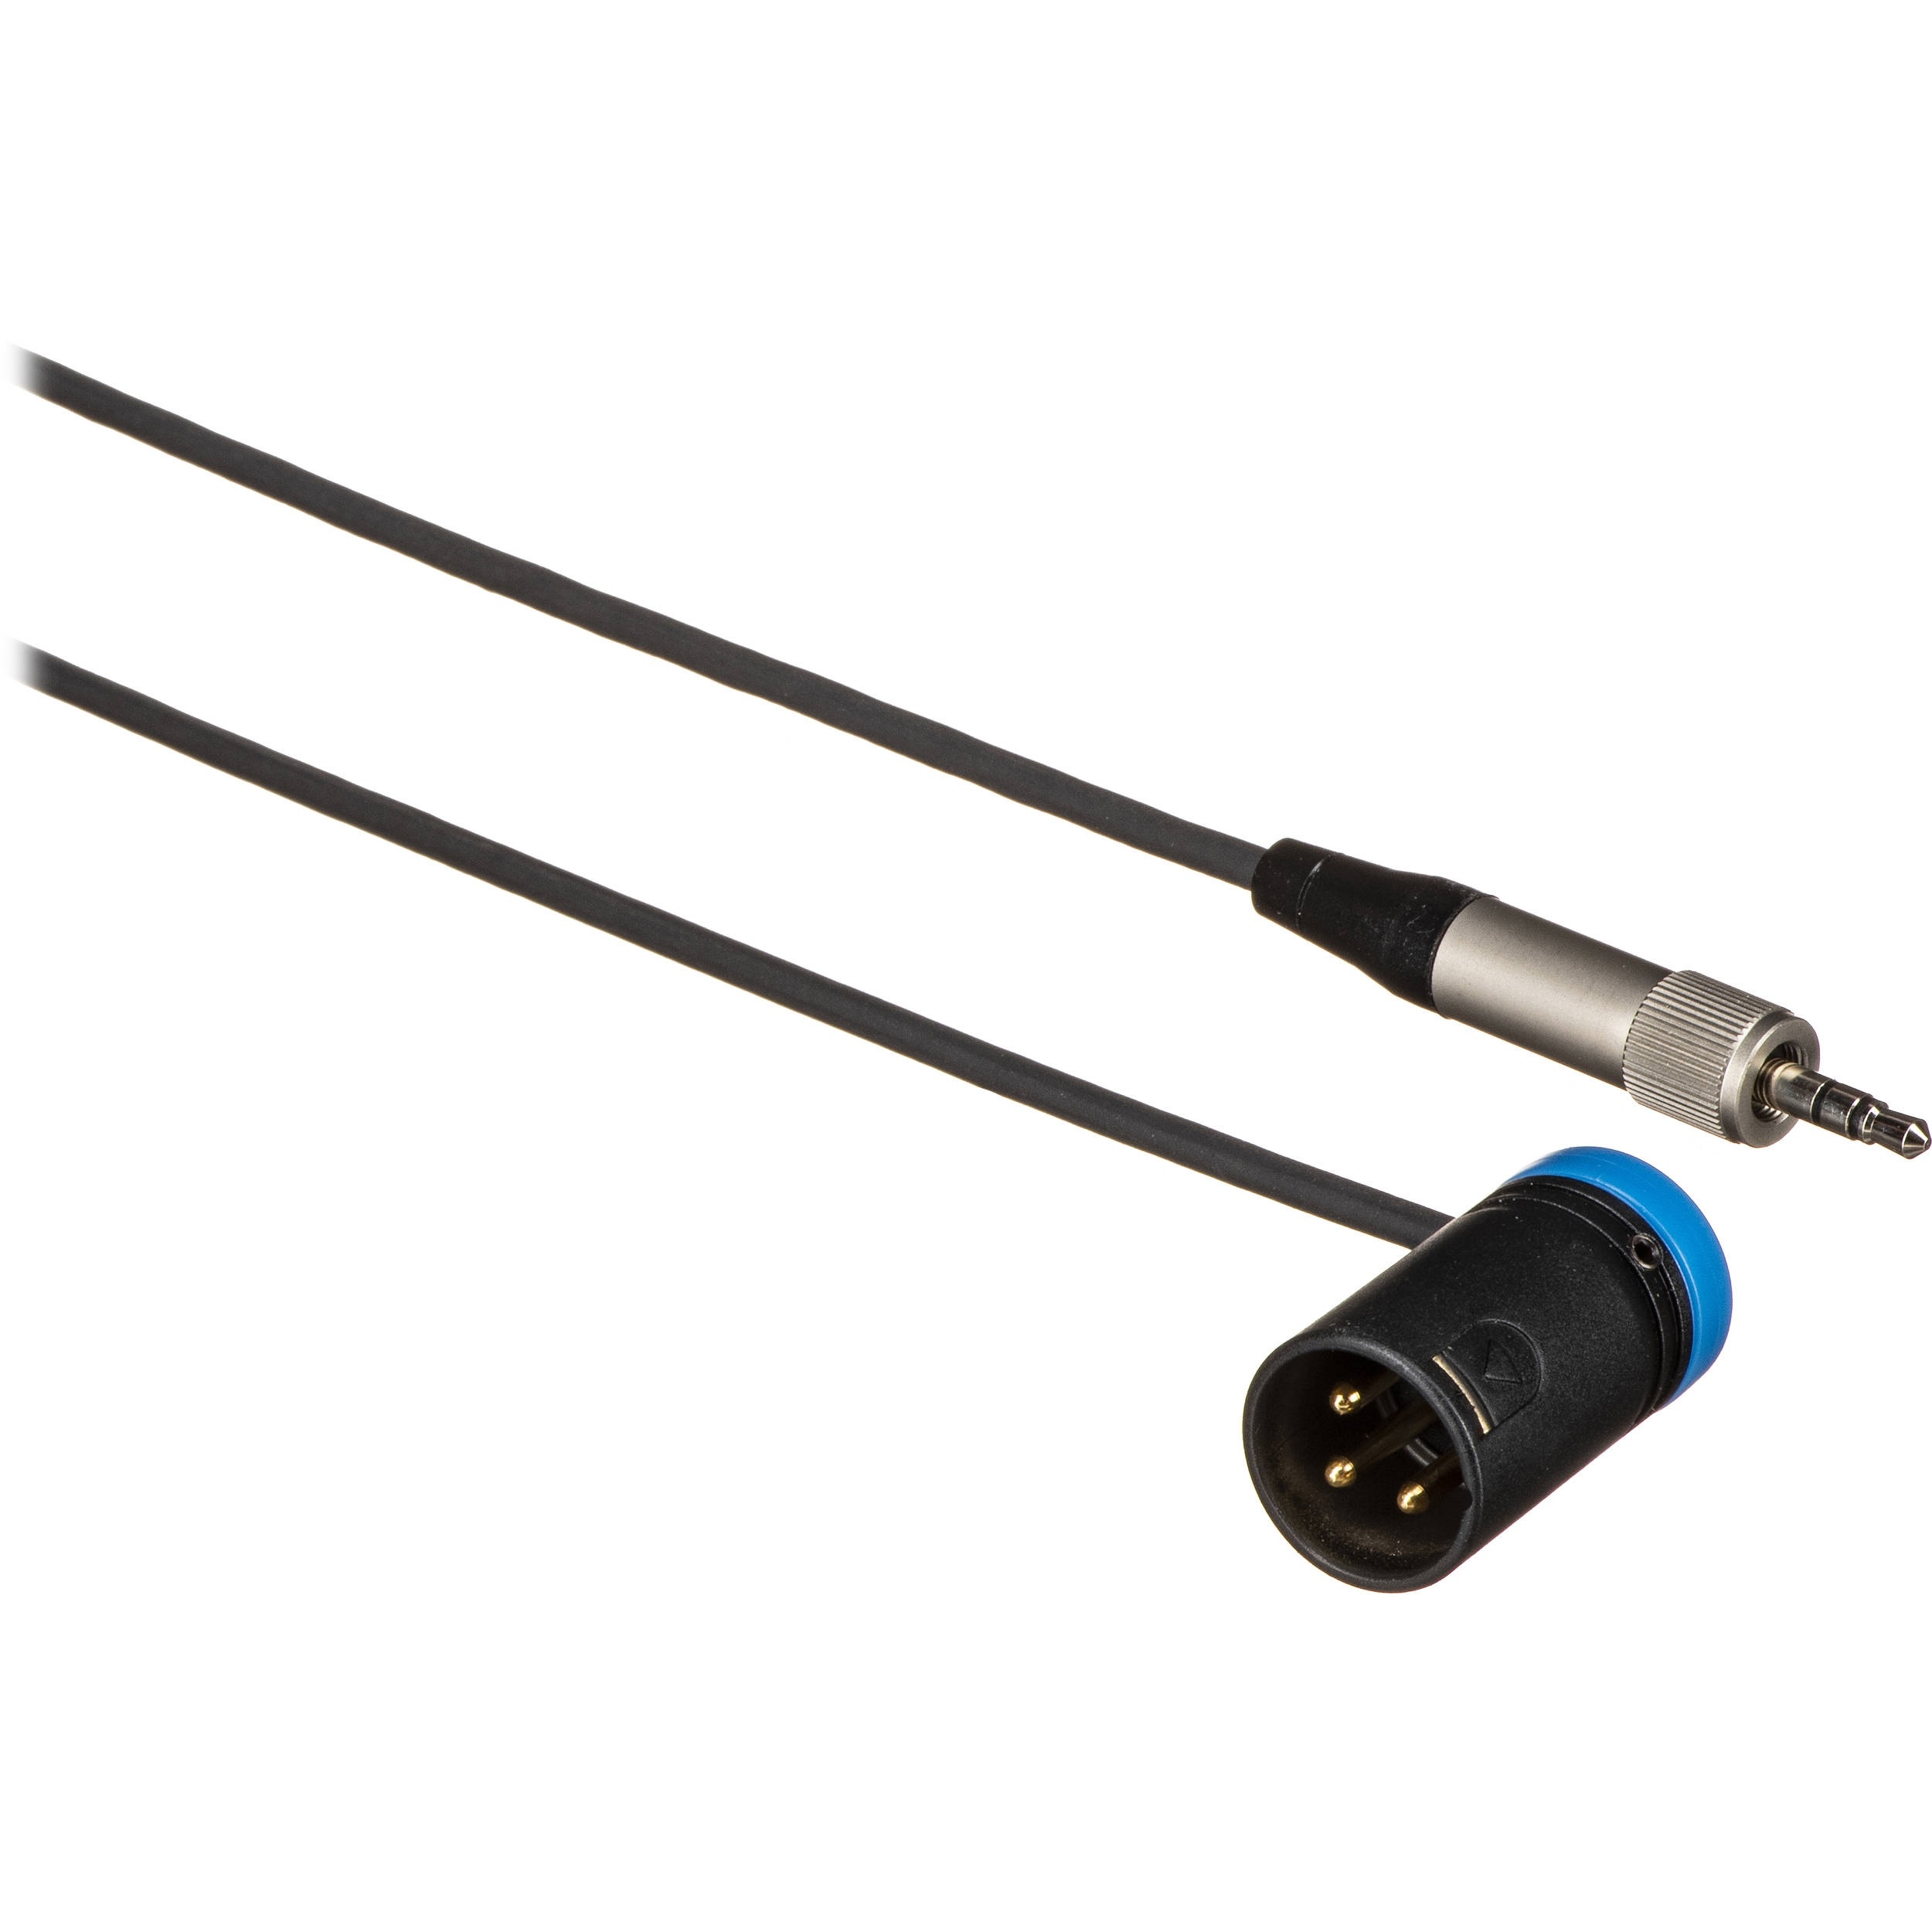 Cable Techniques 3.5mm TRS to Low-Profile XLRM Cable (Unbalanced, 60.9cm, Blue Cap)